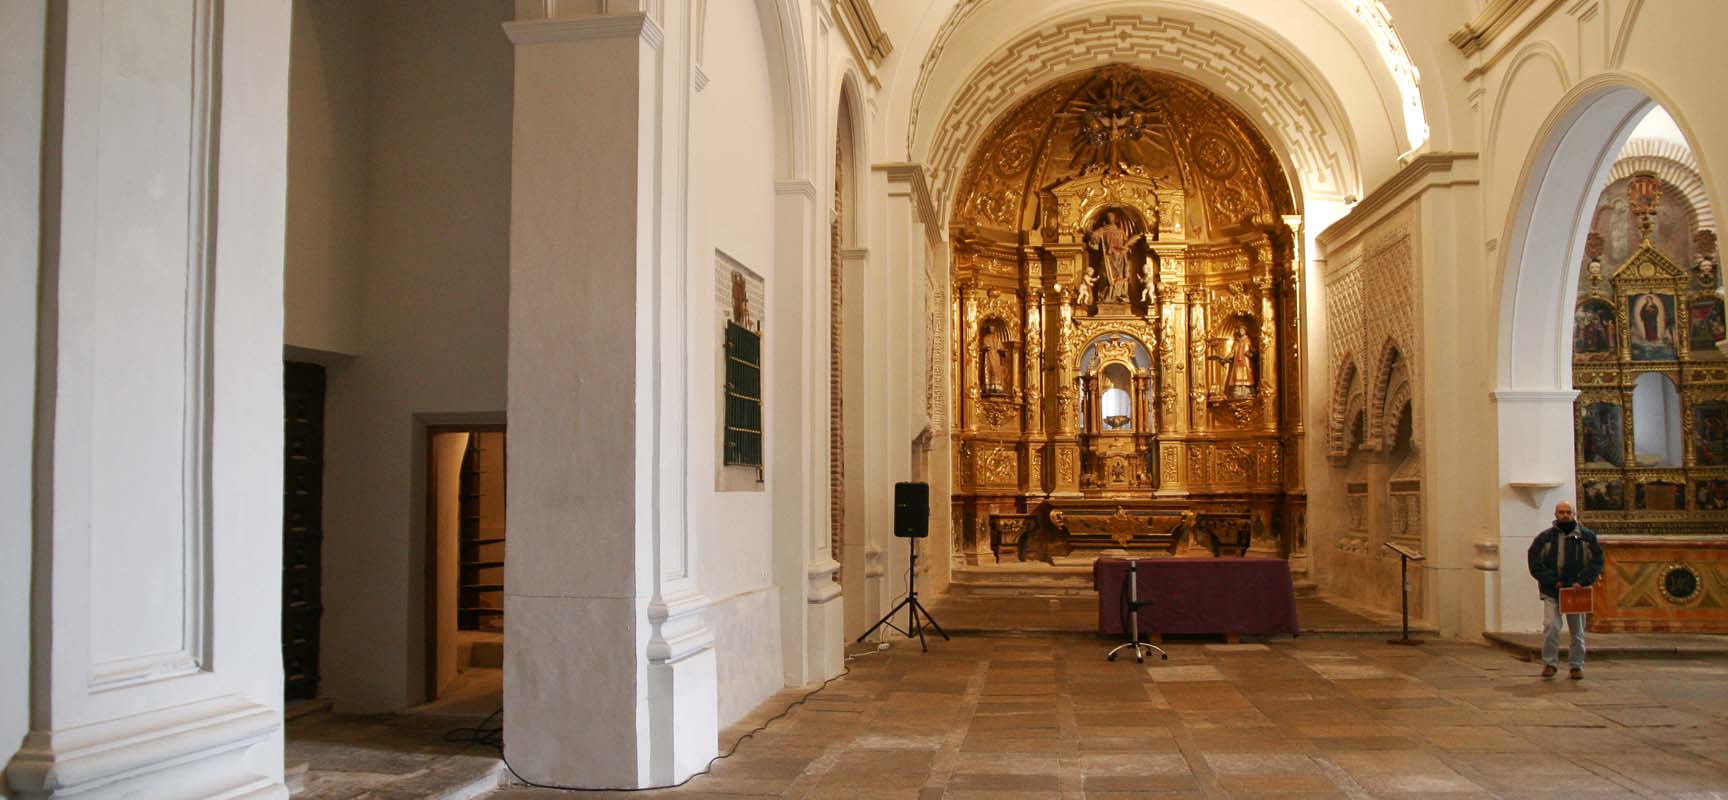 Interior de la iglesia de San esteban que ahora puede recorrerse en visitas turísticas guiadas.